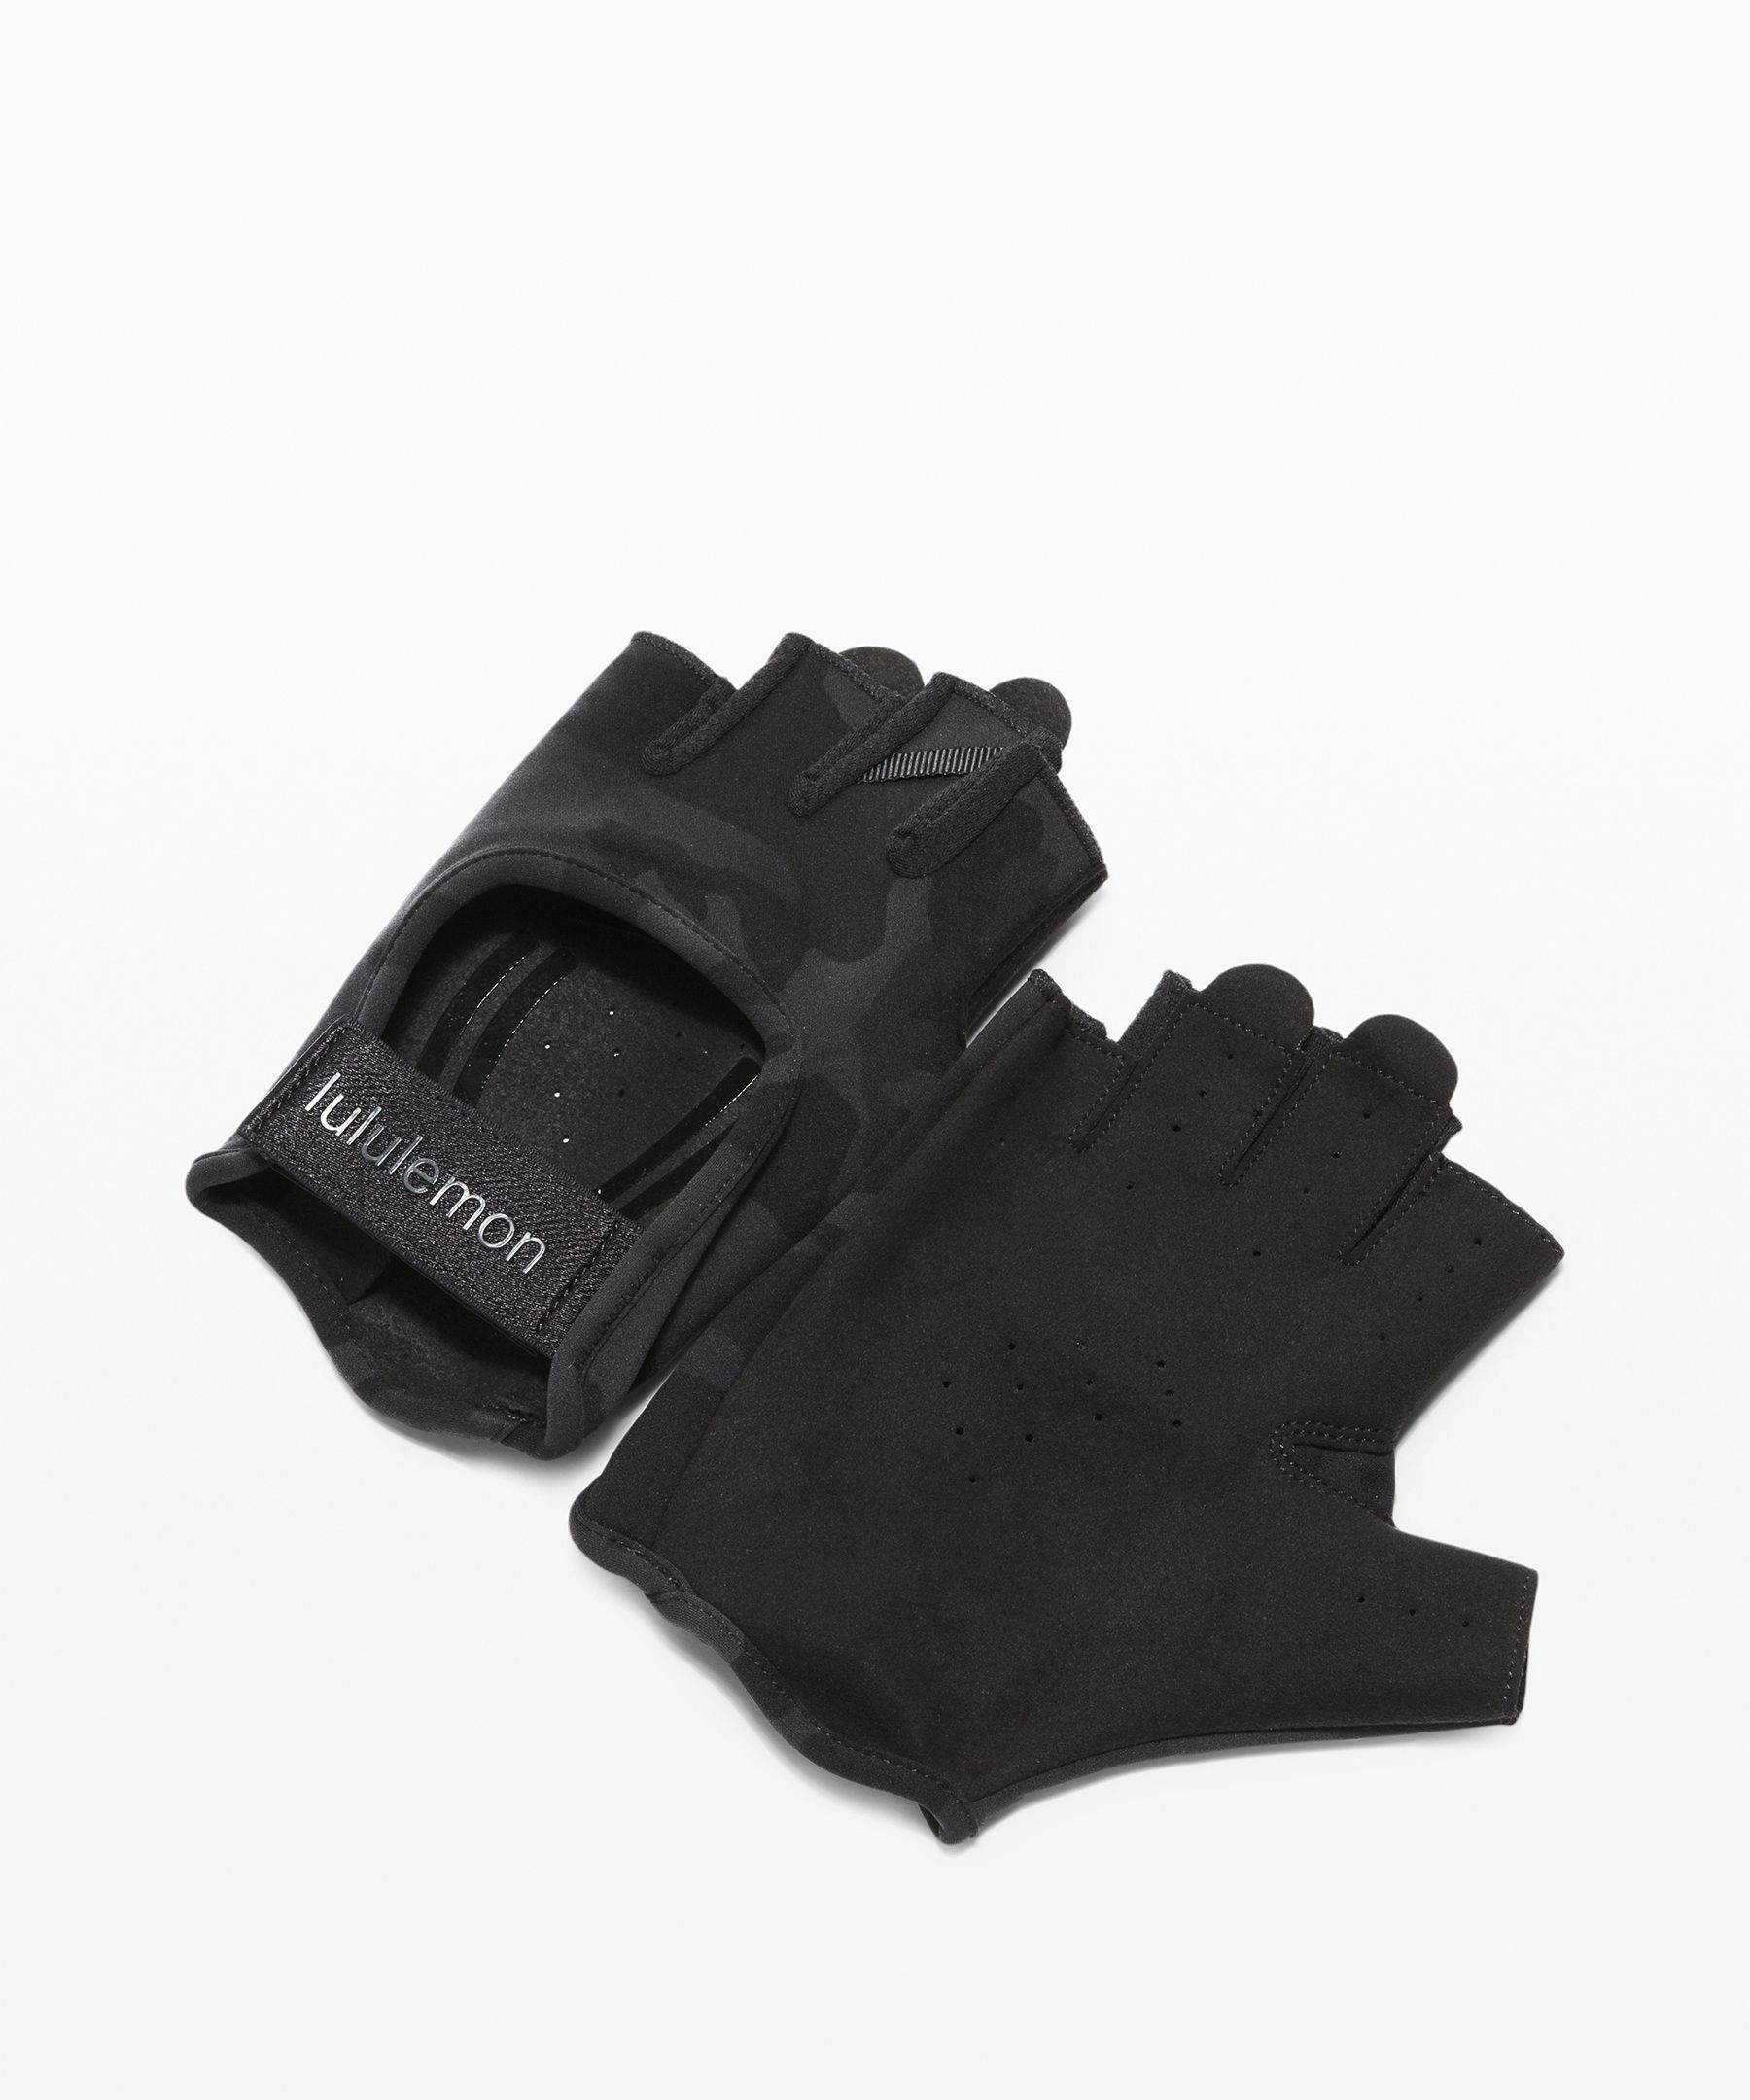 Uplift Training Gloves | Gloves 